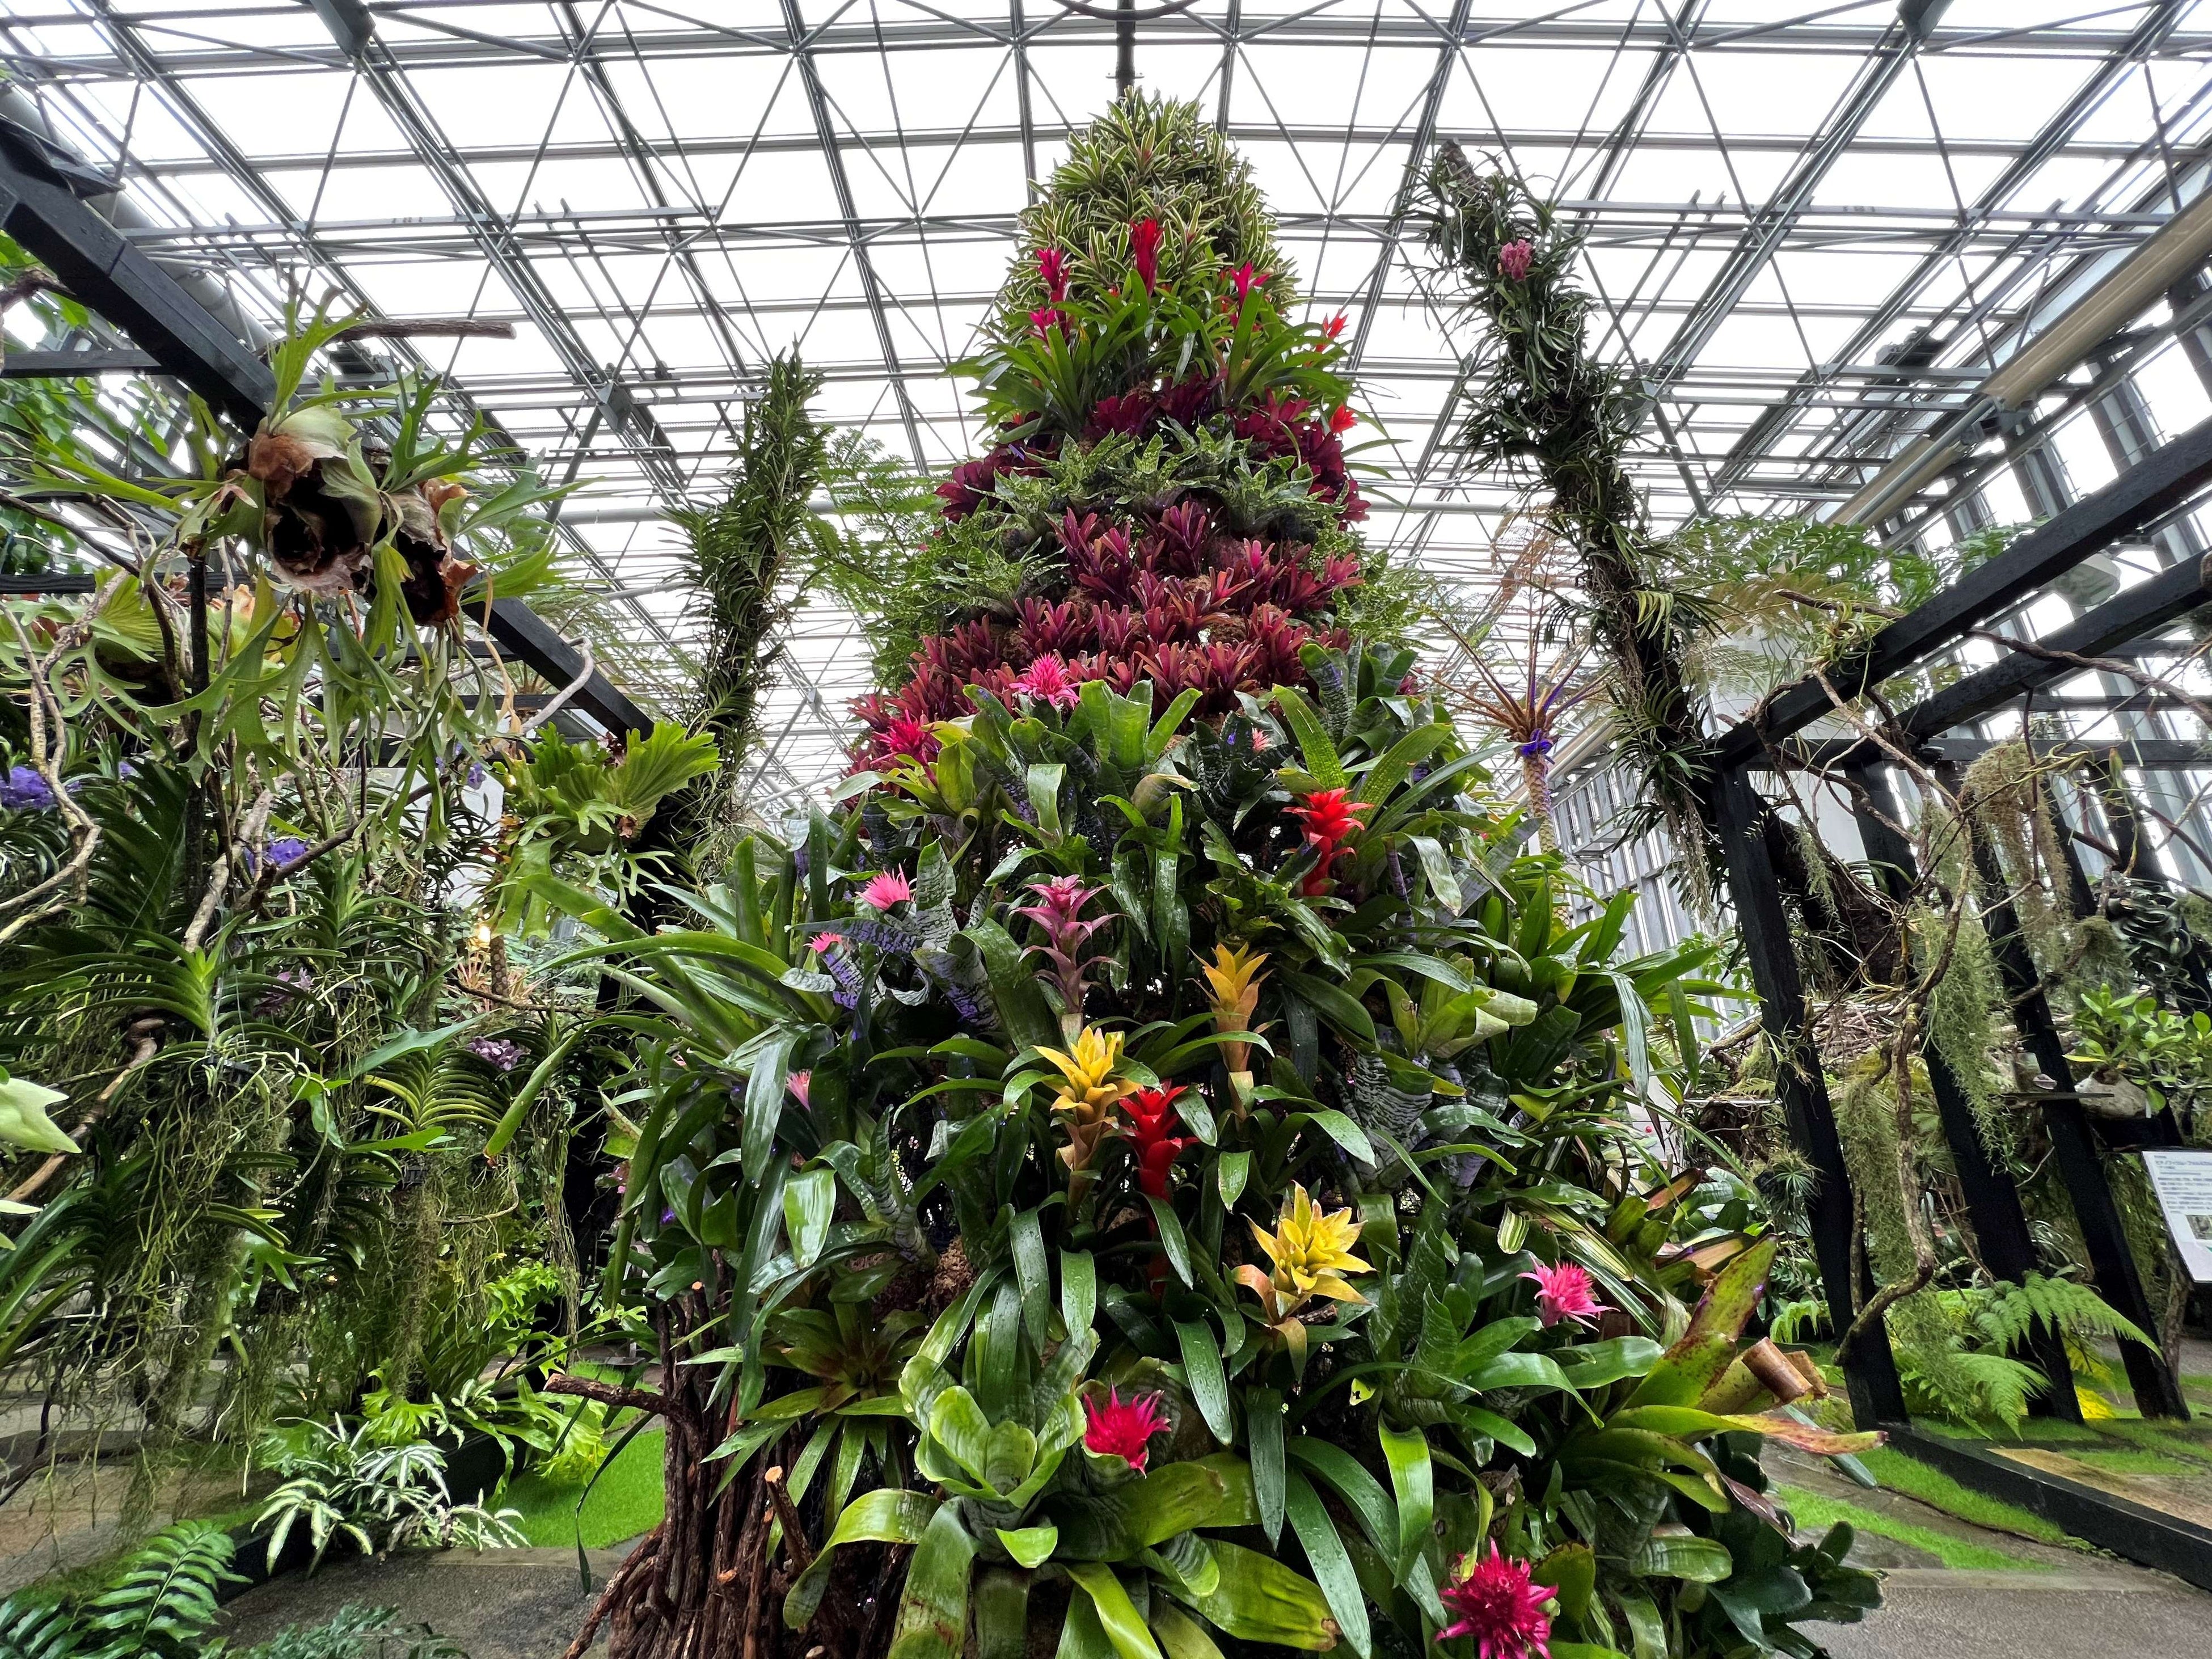  高さ5ｍ、15種類200株のパイナップル科の植物で作られたトロピカルツリー